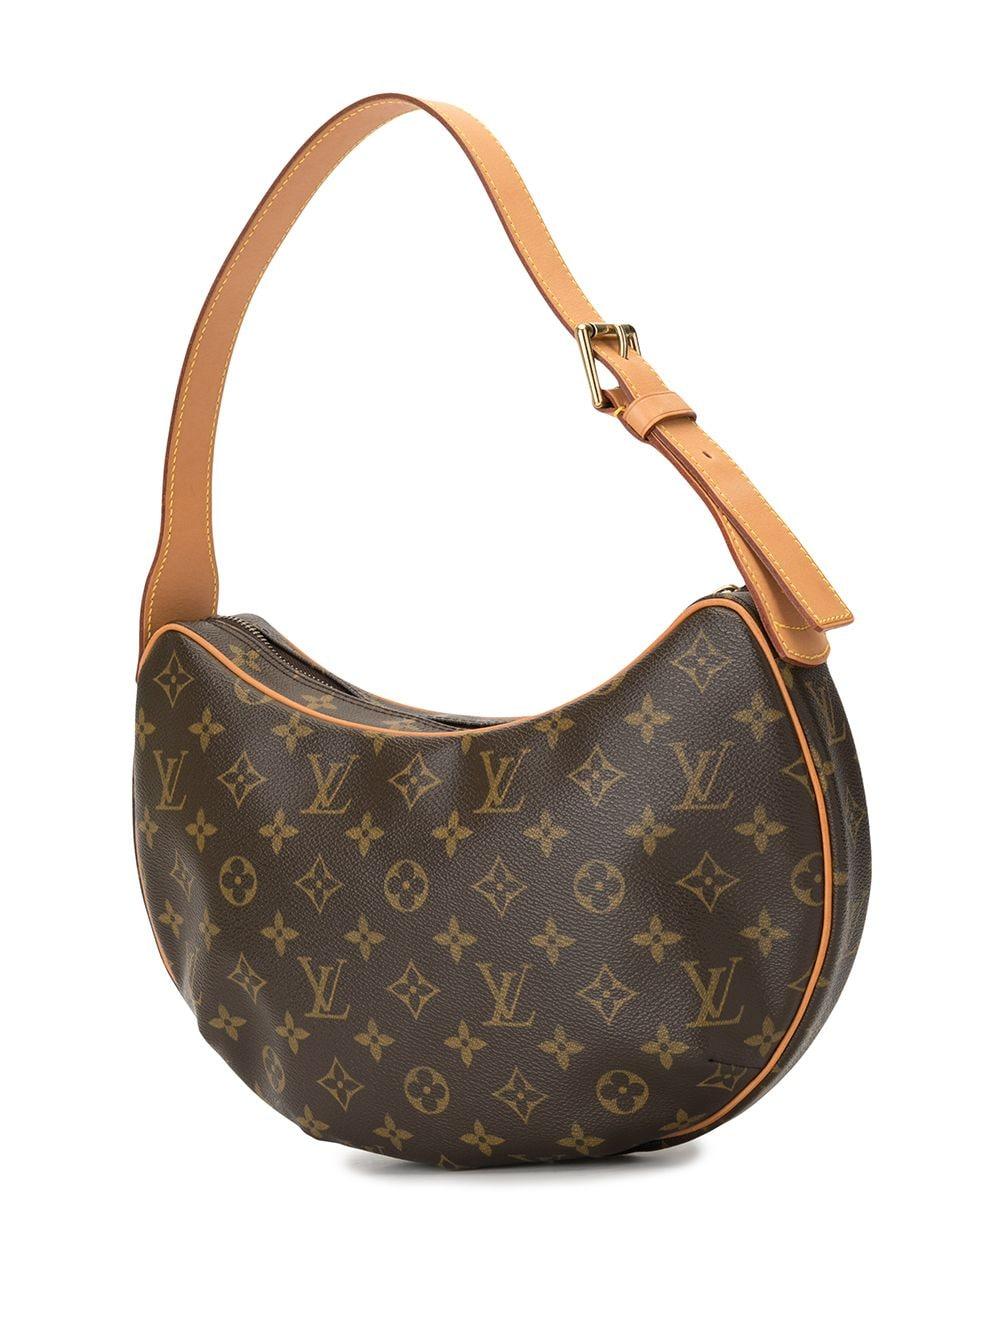 Louis Vuitton 2002 Pre-owned Croissant Shoulder Bag